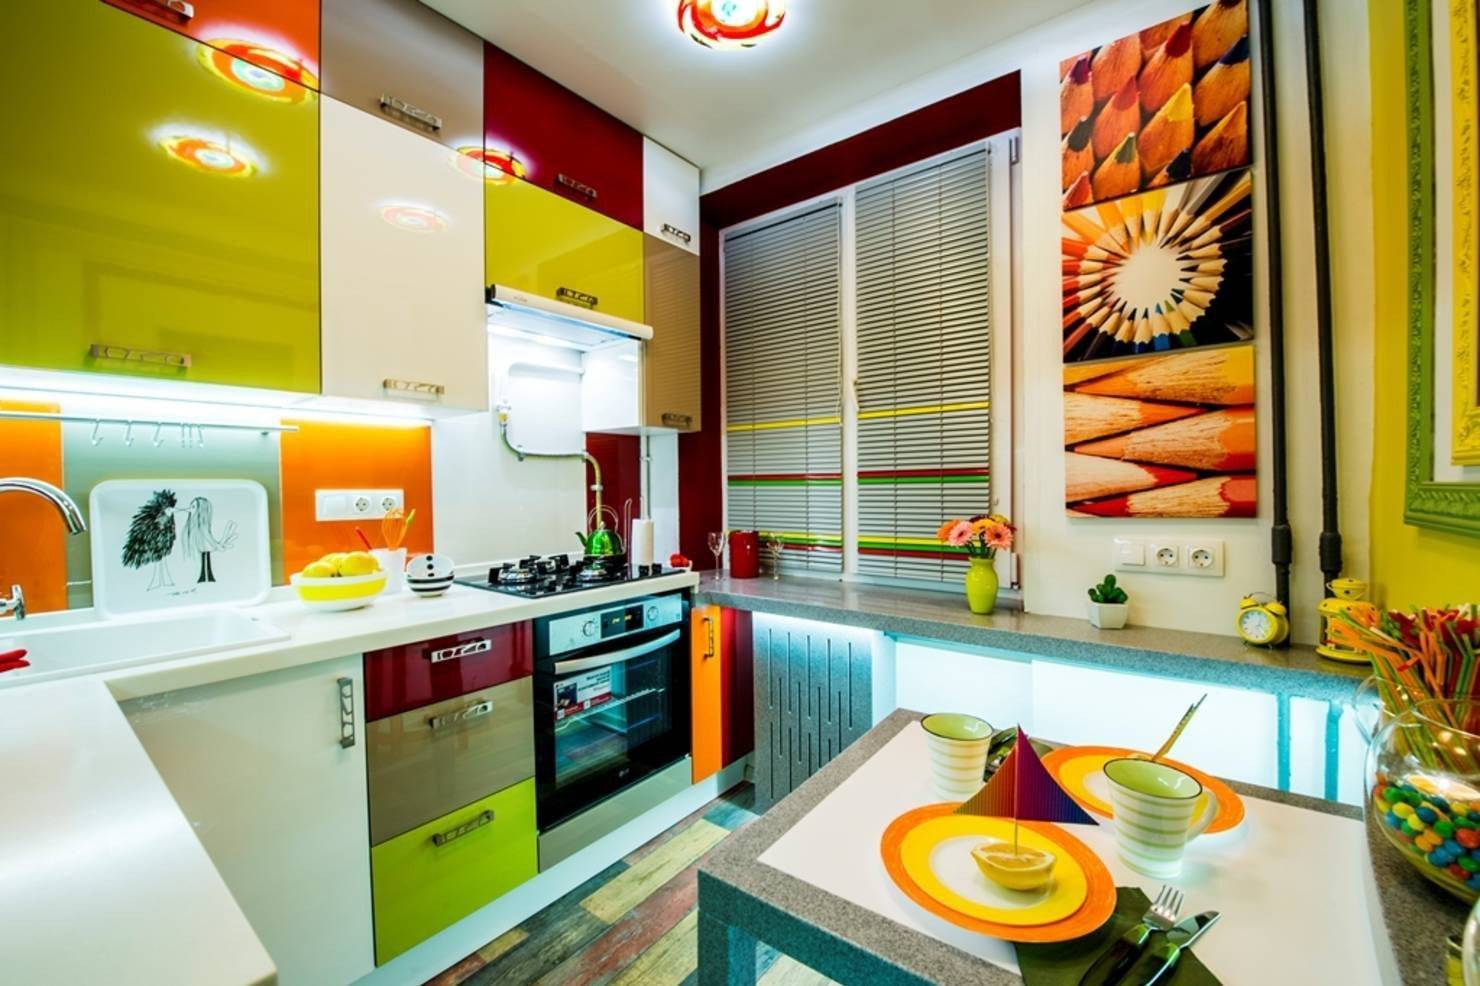 Дизайн кухни в светлых тонах - идеи интерьера (75 фото)